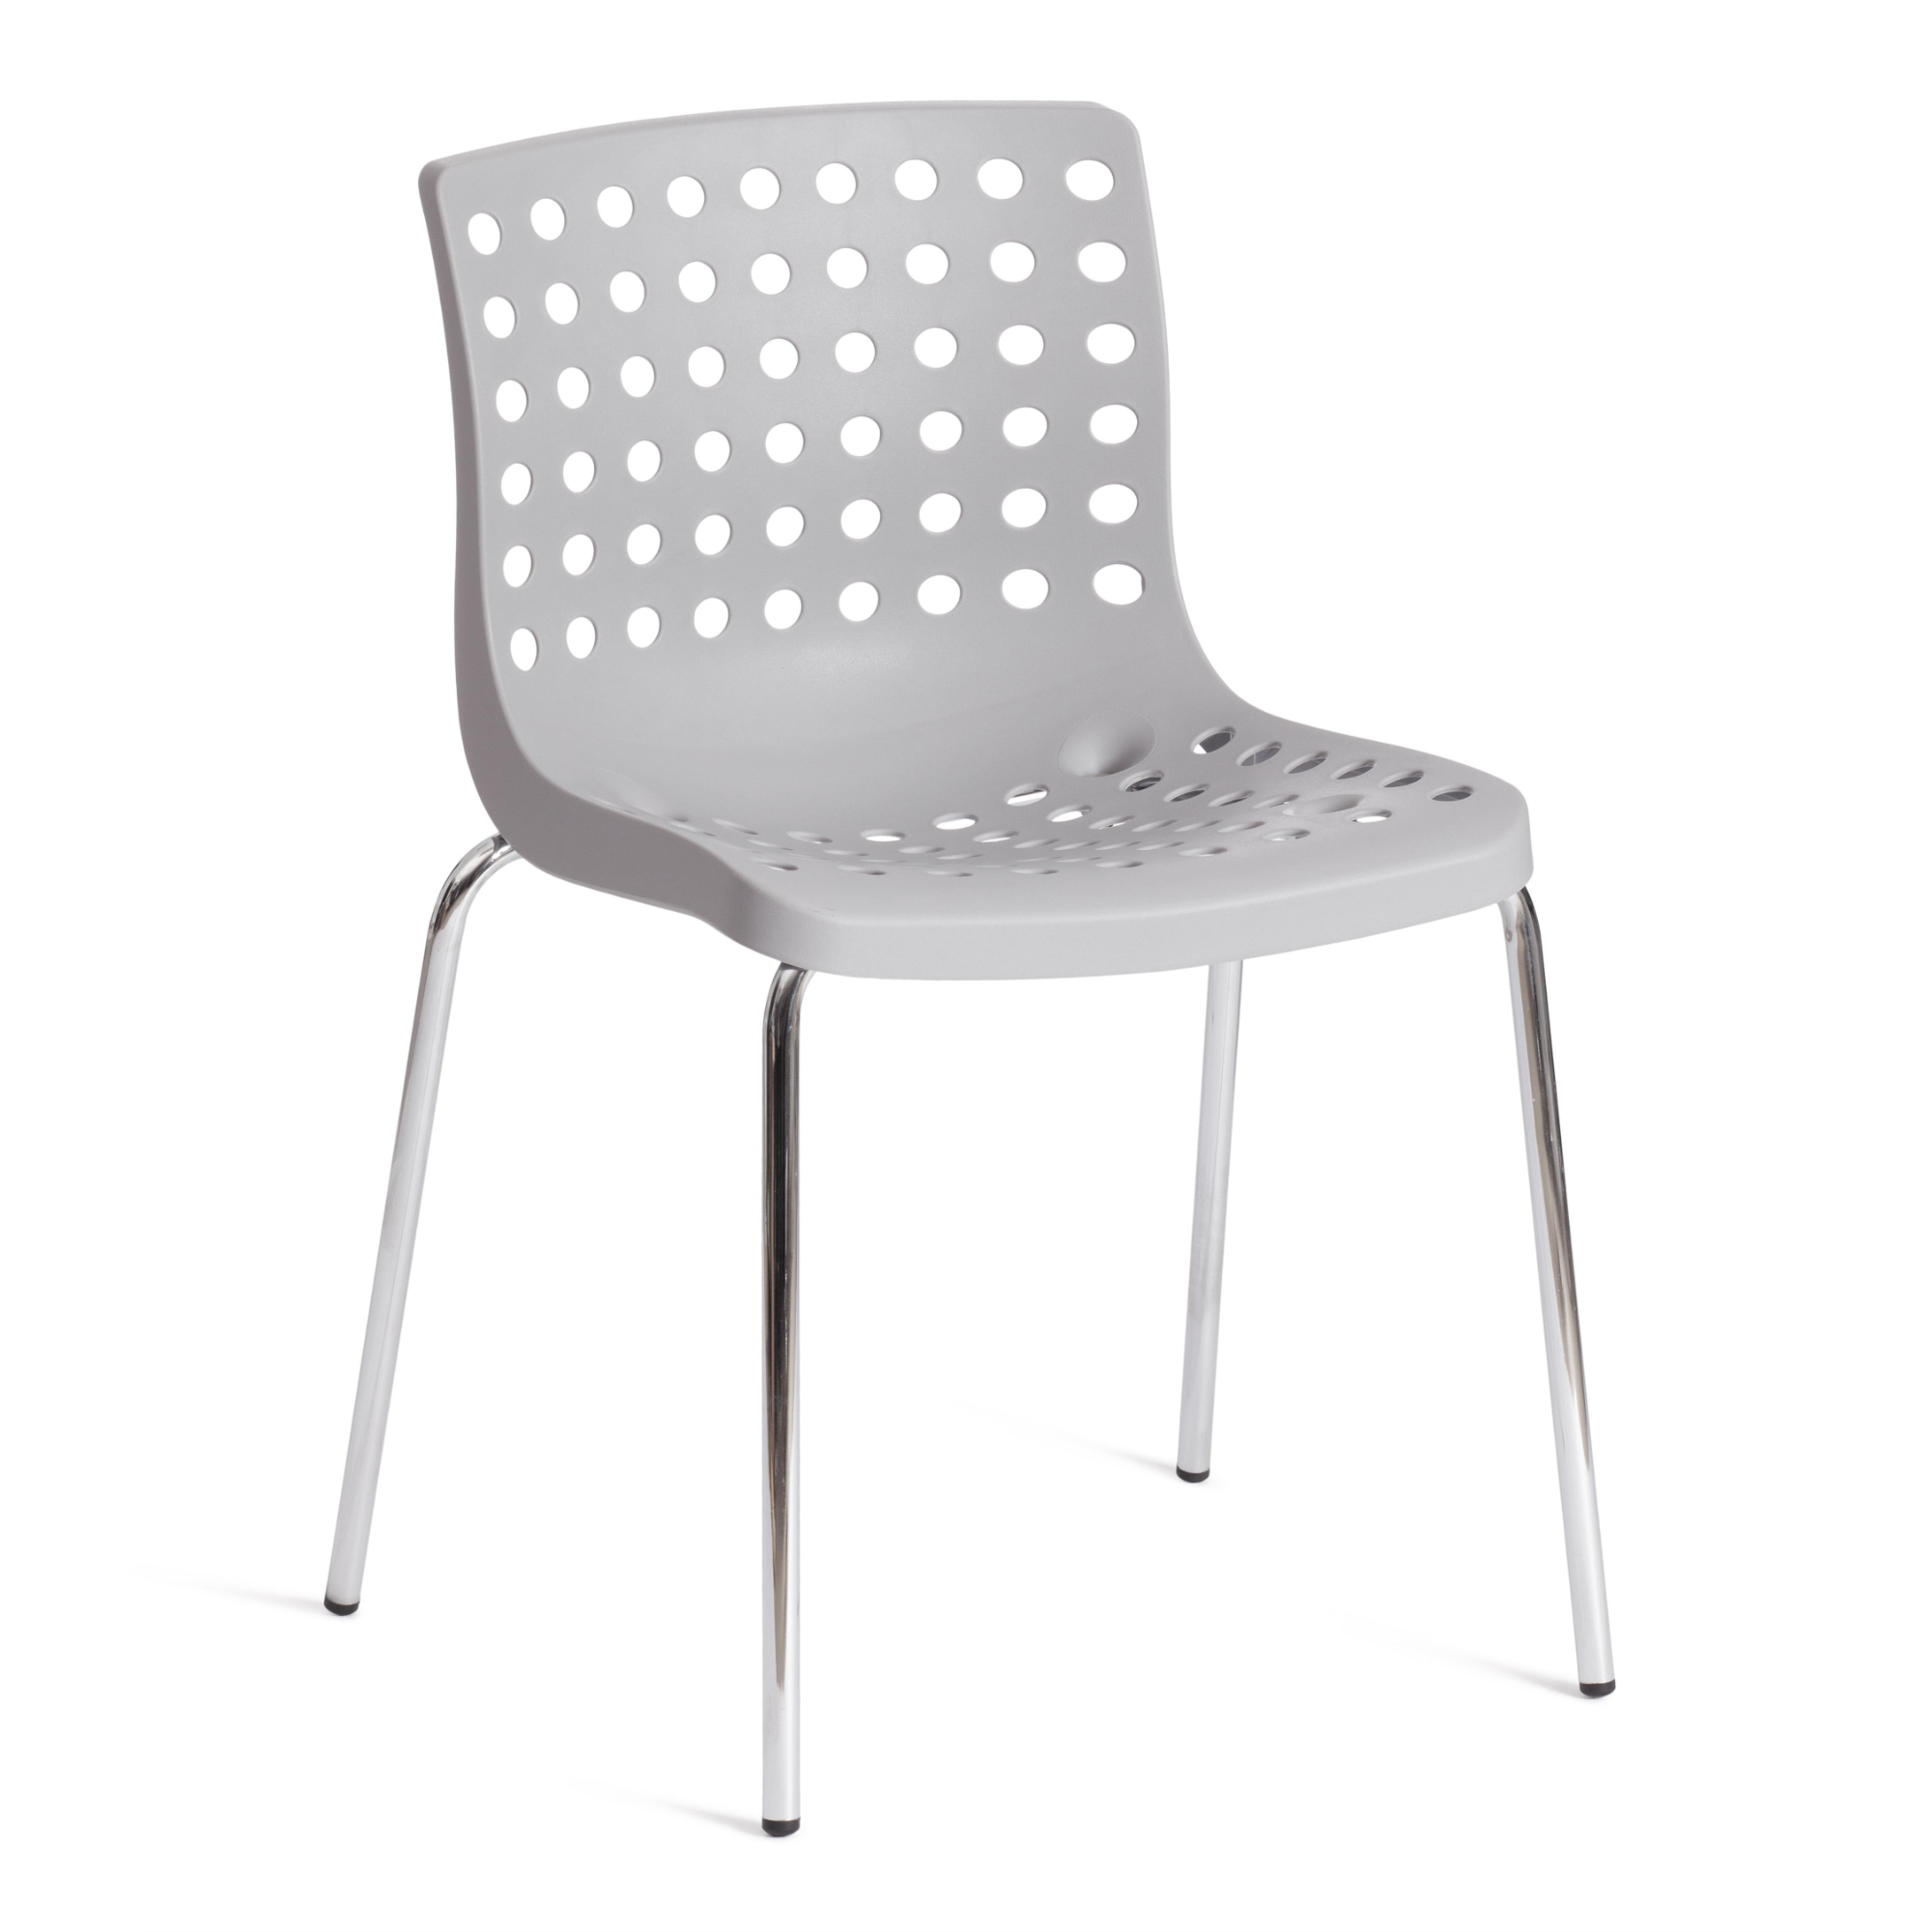 Стул ТС Skalberg пластиковый серый с хромированными ножками 46х56х79 см стул тс cindy chair пластиковый с ножками из бука белый 45х51х82 см